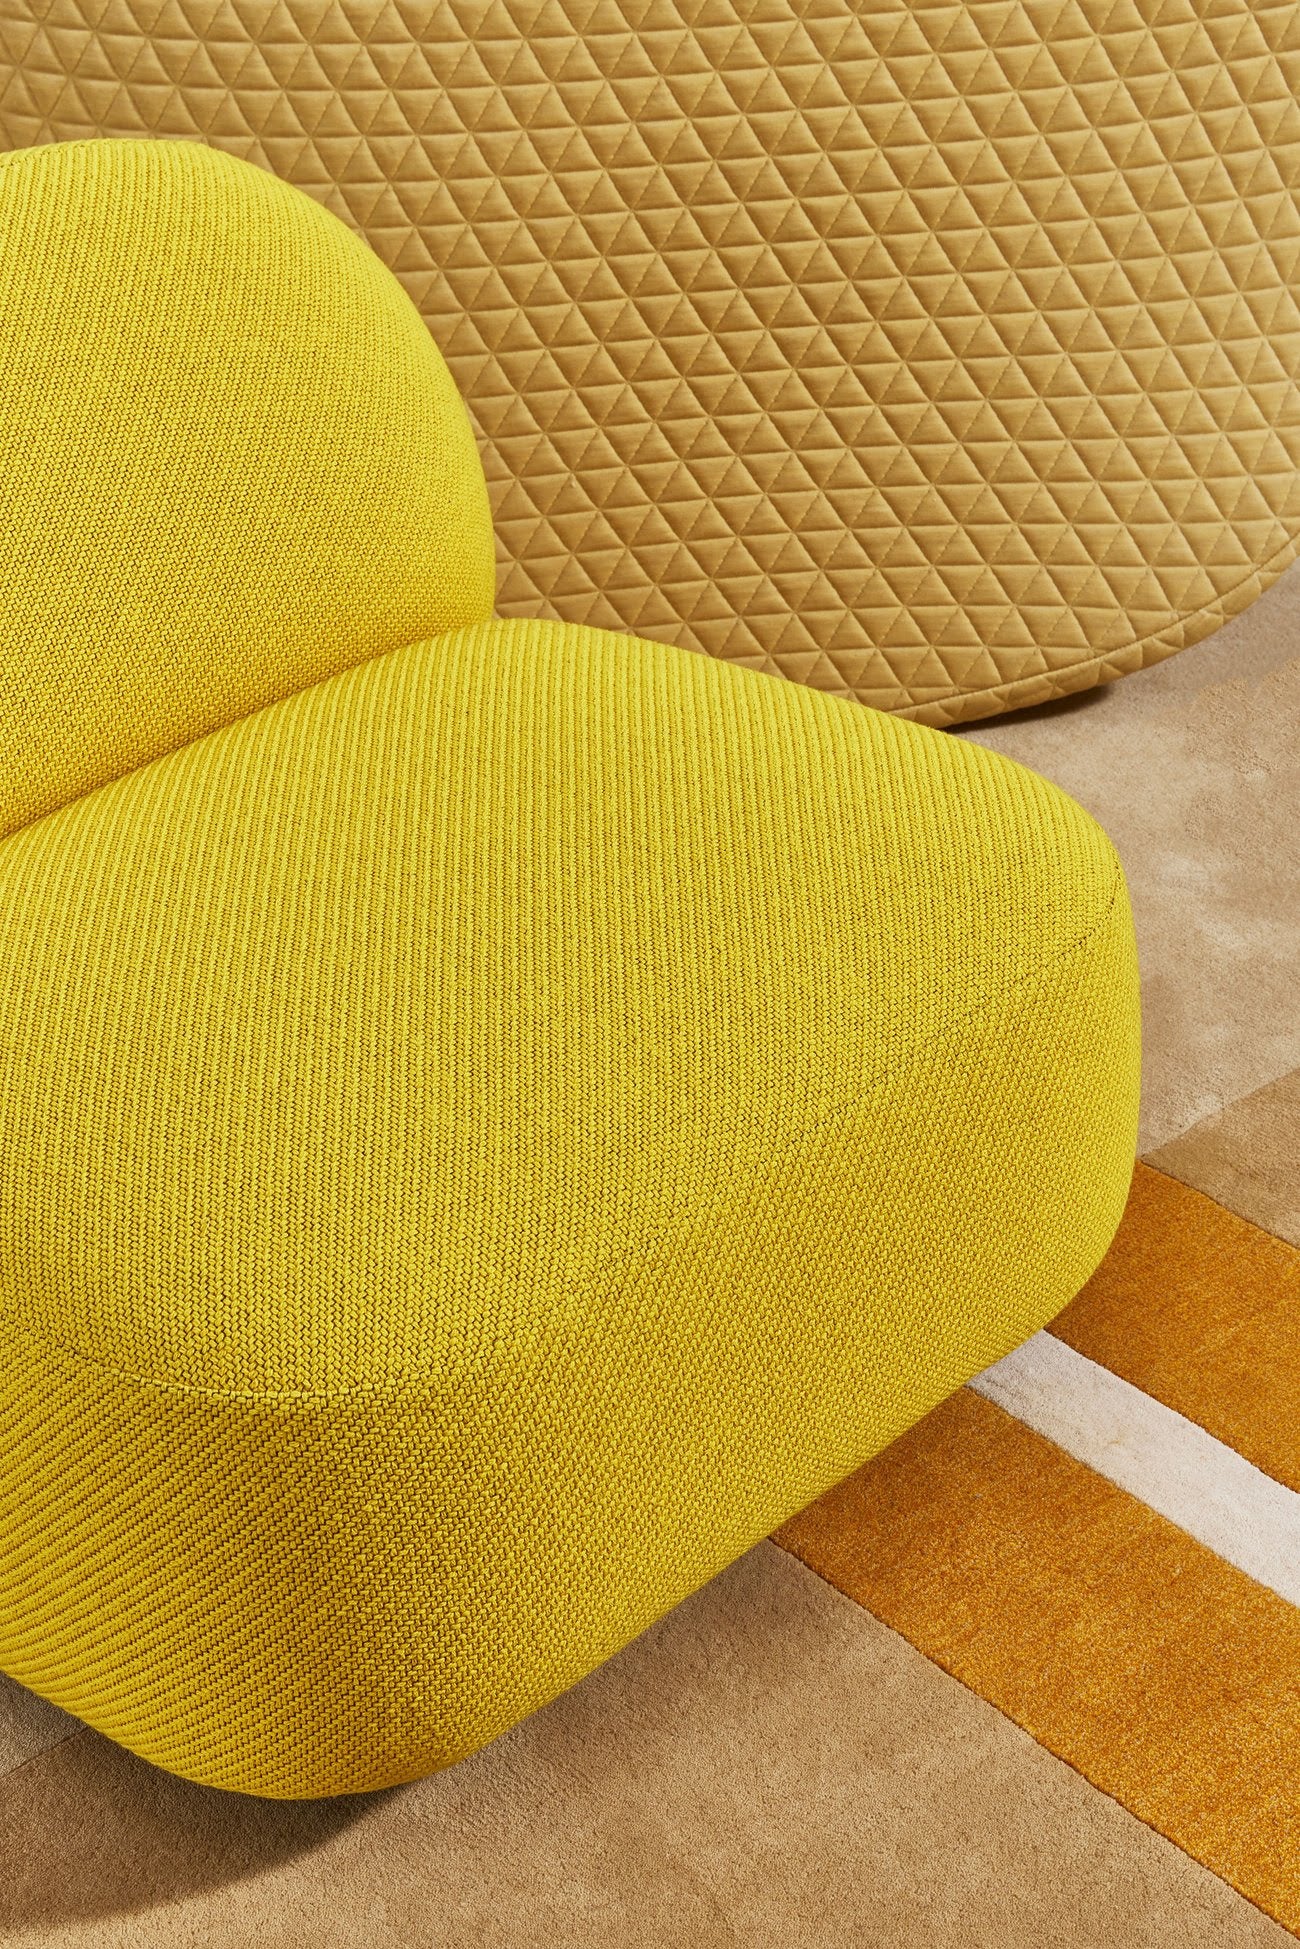 Sundae Seat | Jason Ju | DesignByThem